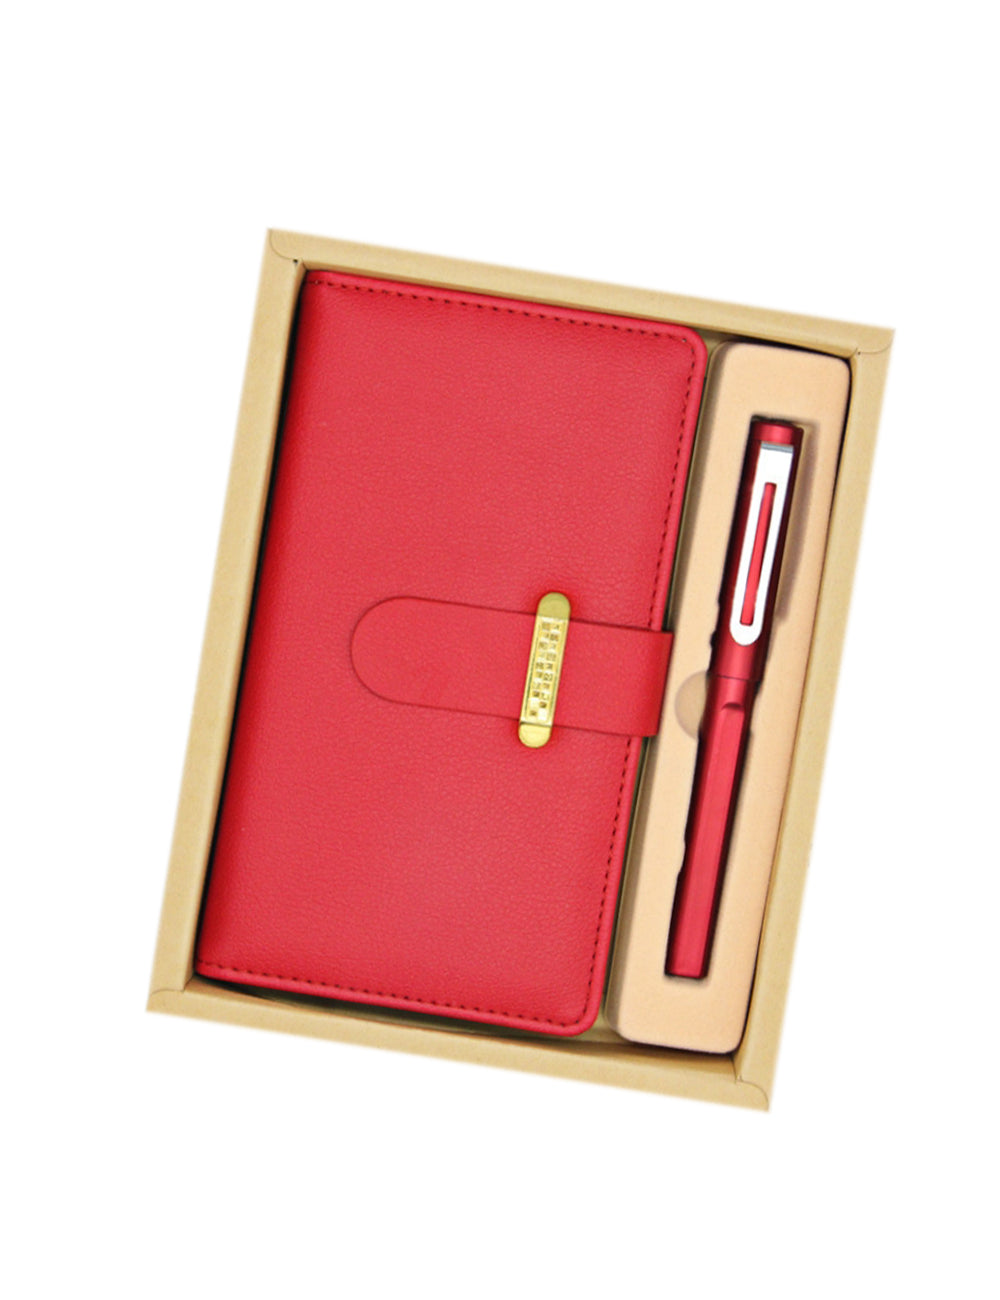 【客製化】A6商務筆記本2件套禮盒組 | 禮品、贈品專業客製禮贈品顧問 | 禮品、贈品專屬客製禮贈品專家